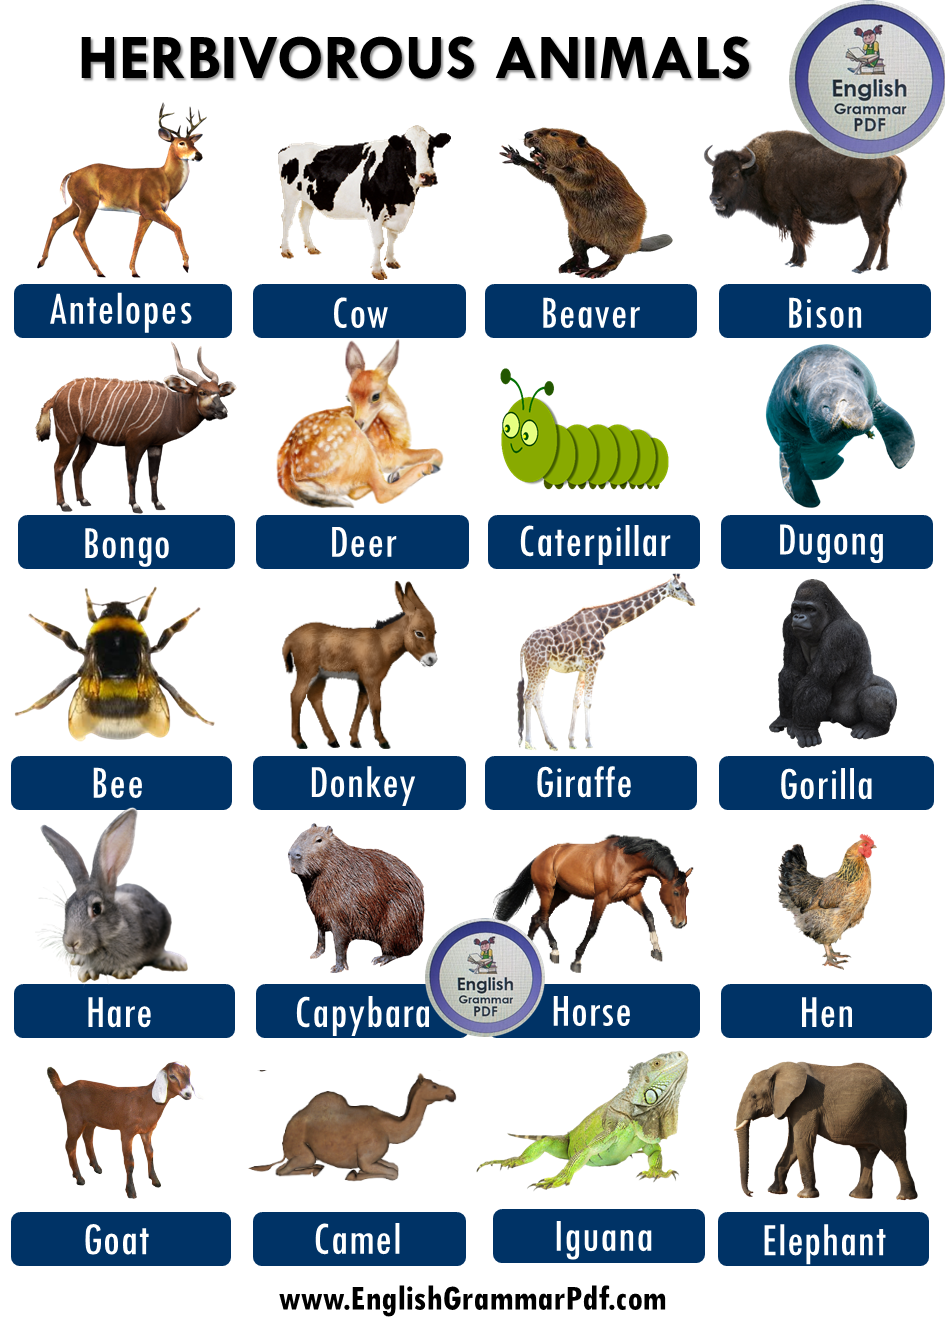 40 Herbivorous Animals Name List